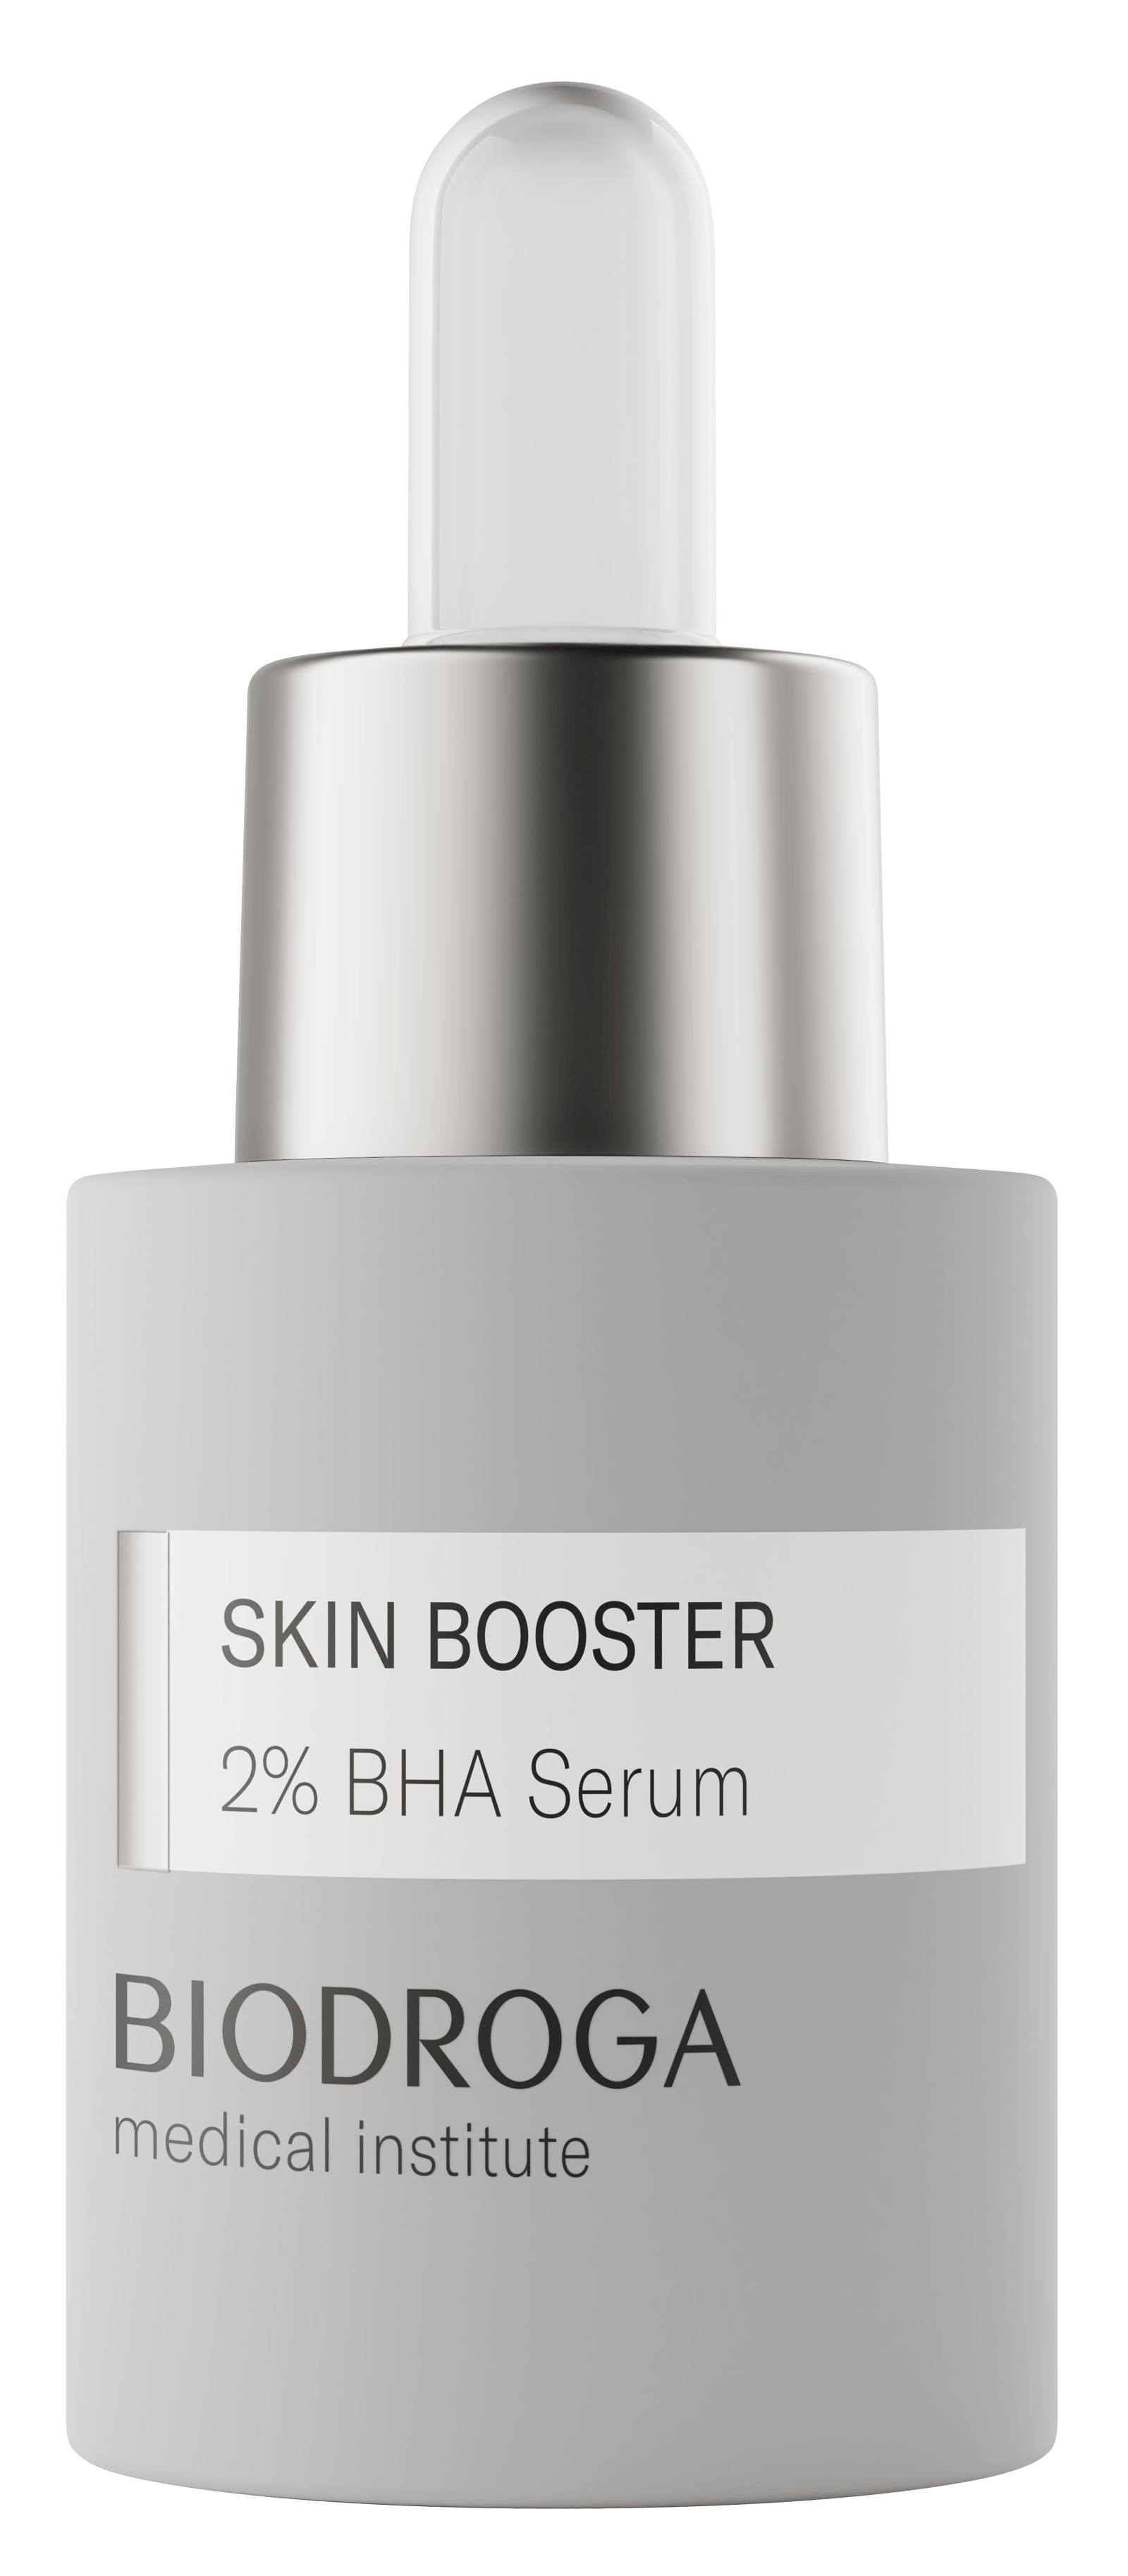 BIODROGA Medical Institute Skin Booster 2% BHA Serum